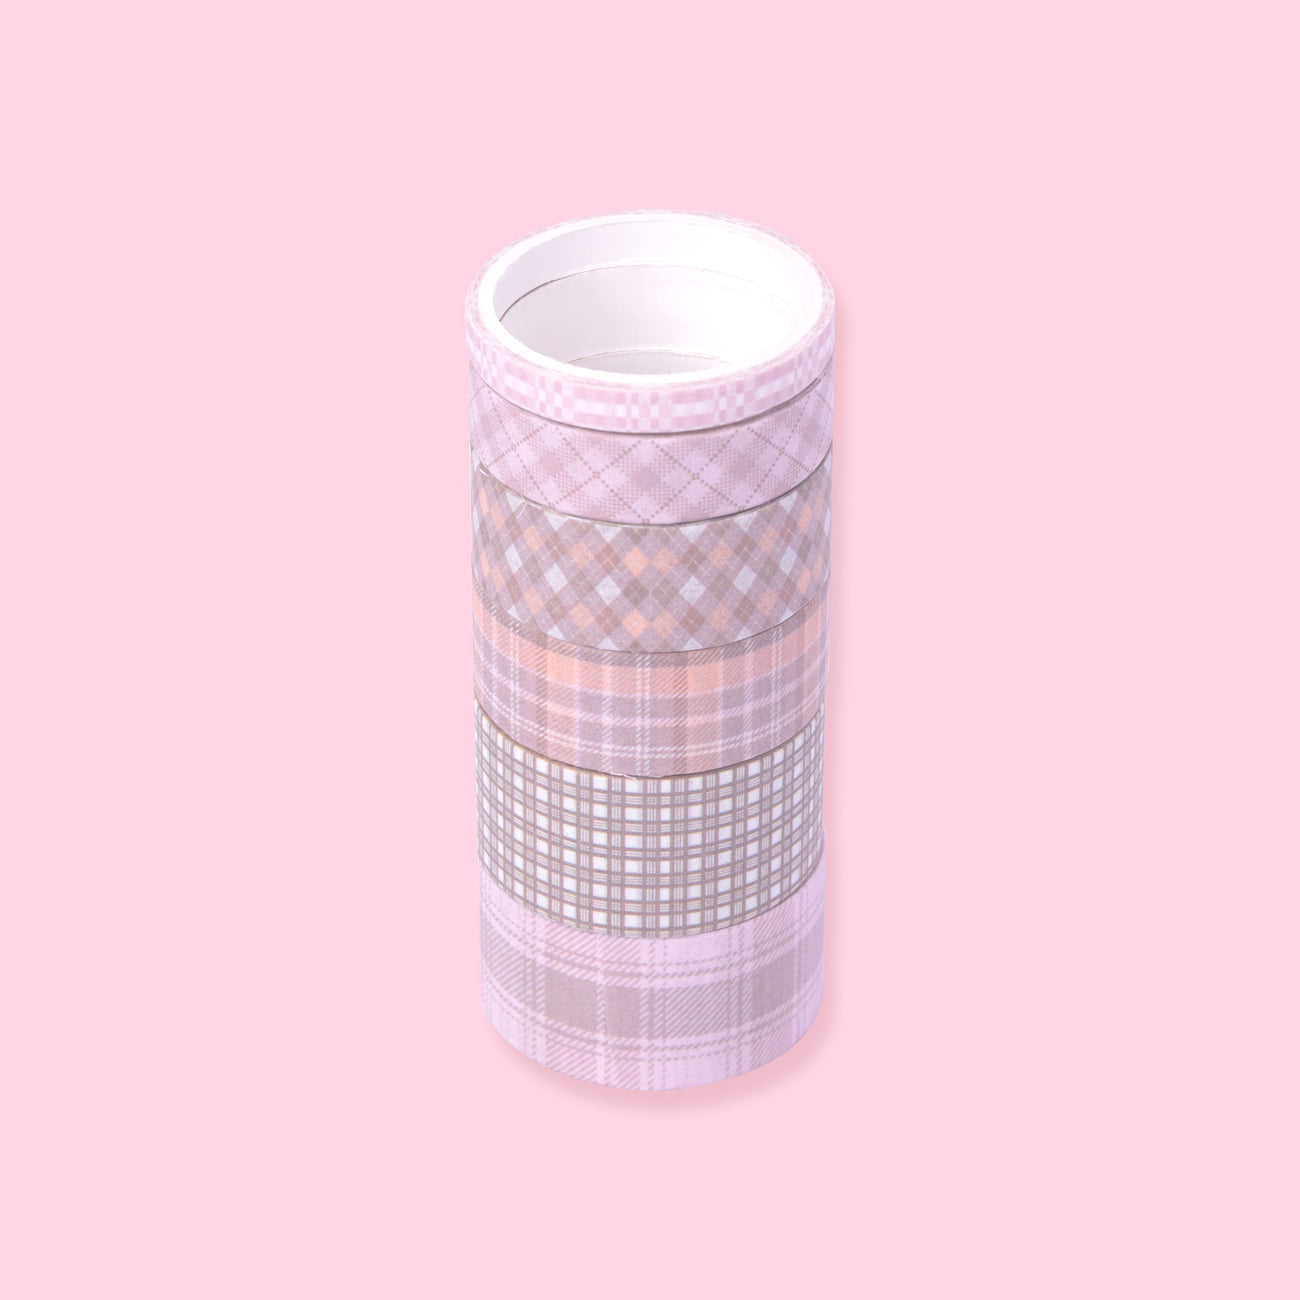 Grid Pattern Washi Tape - Set of 6 - Brown